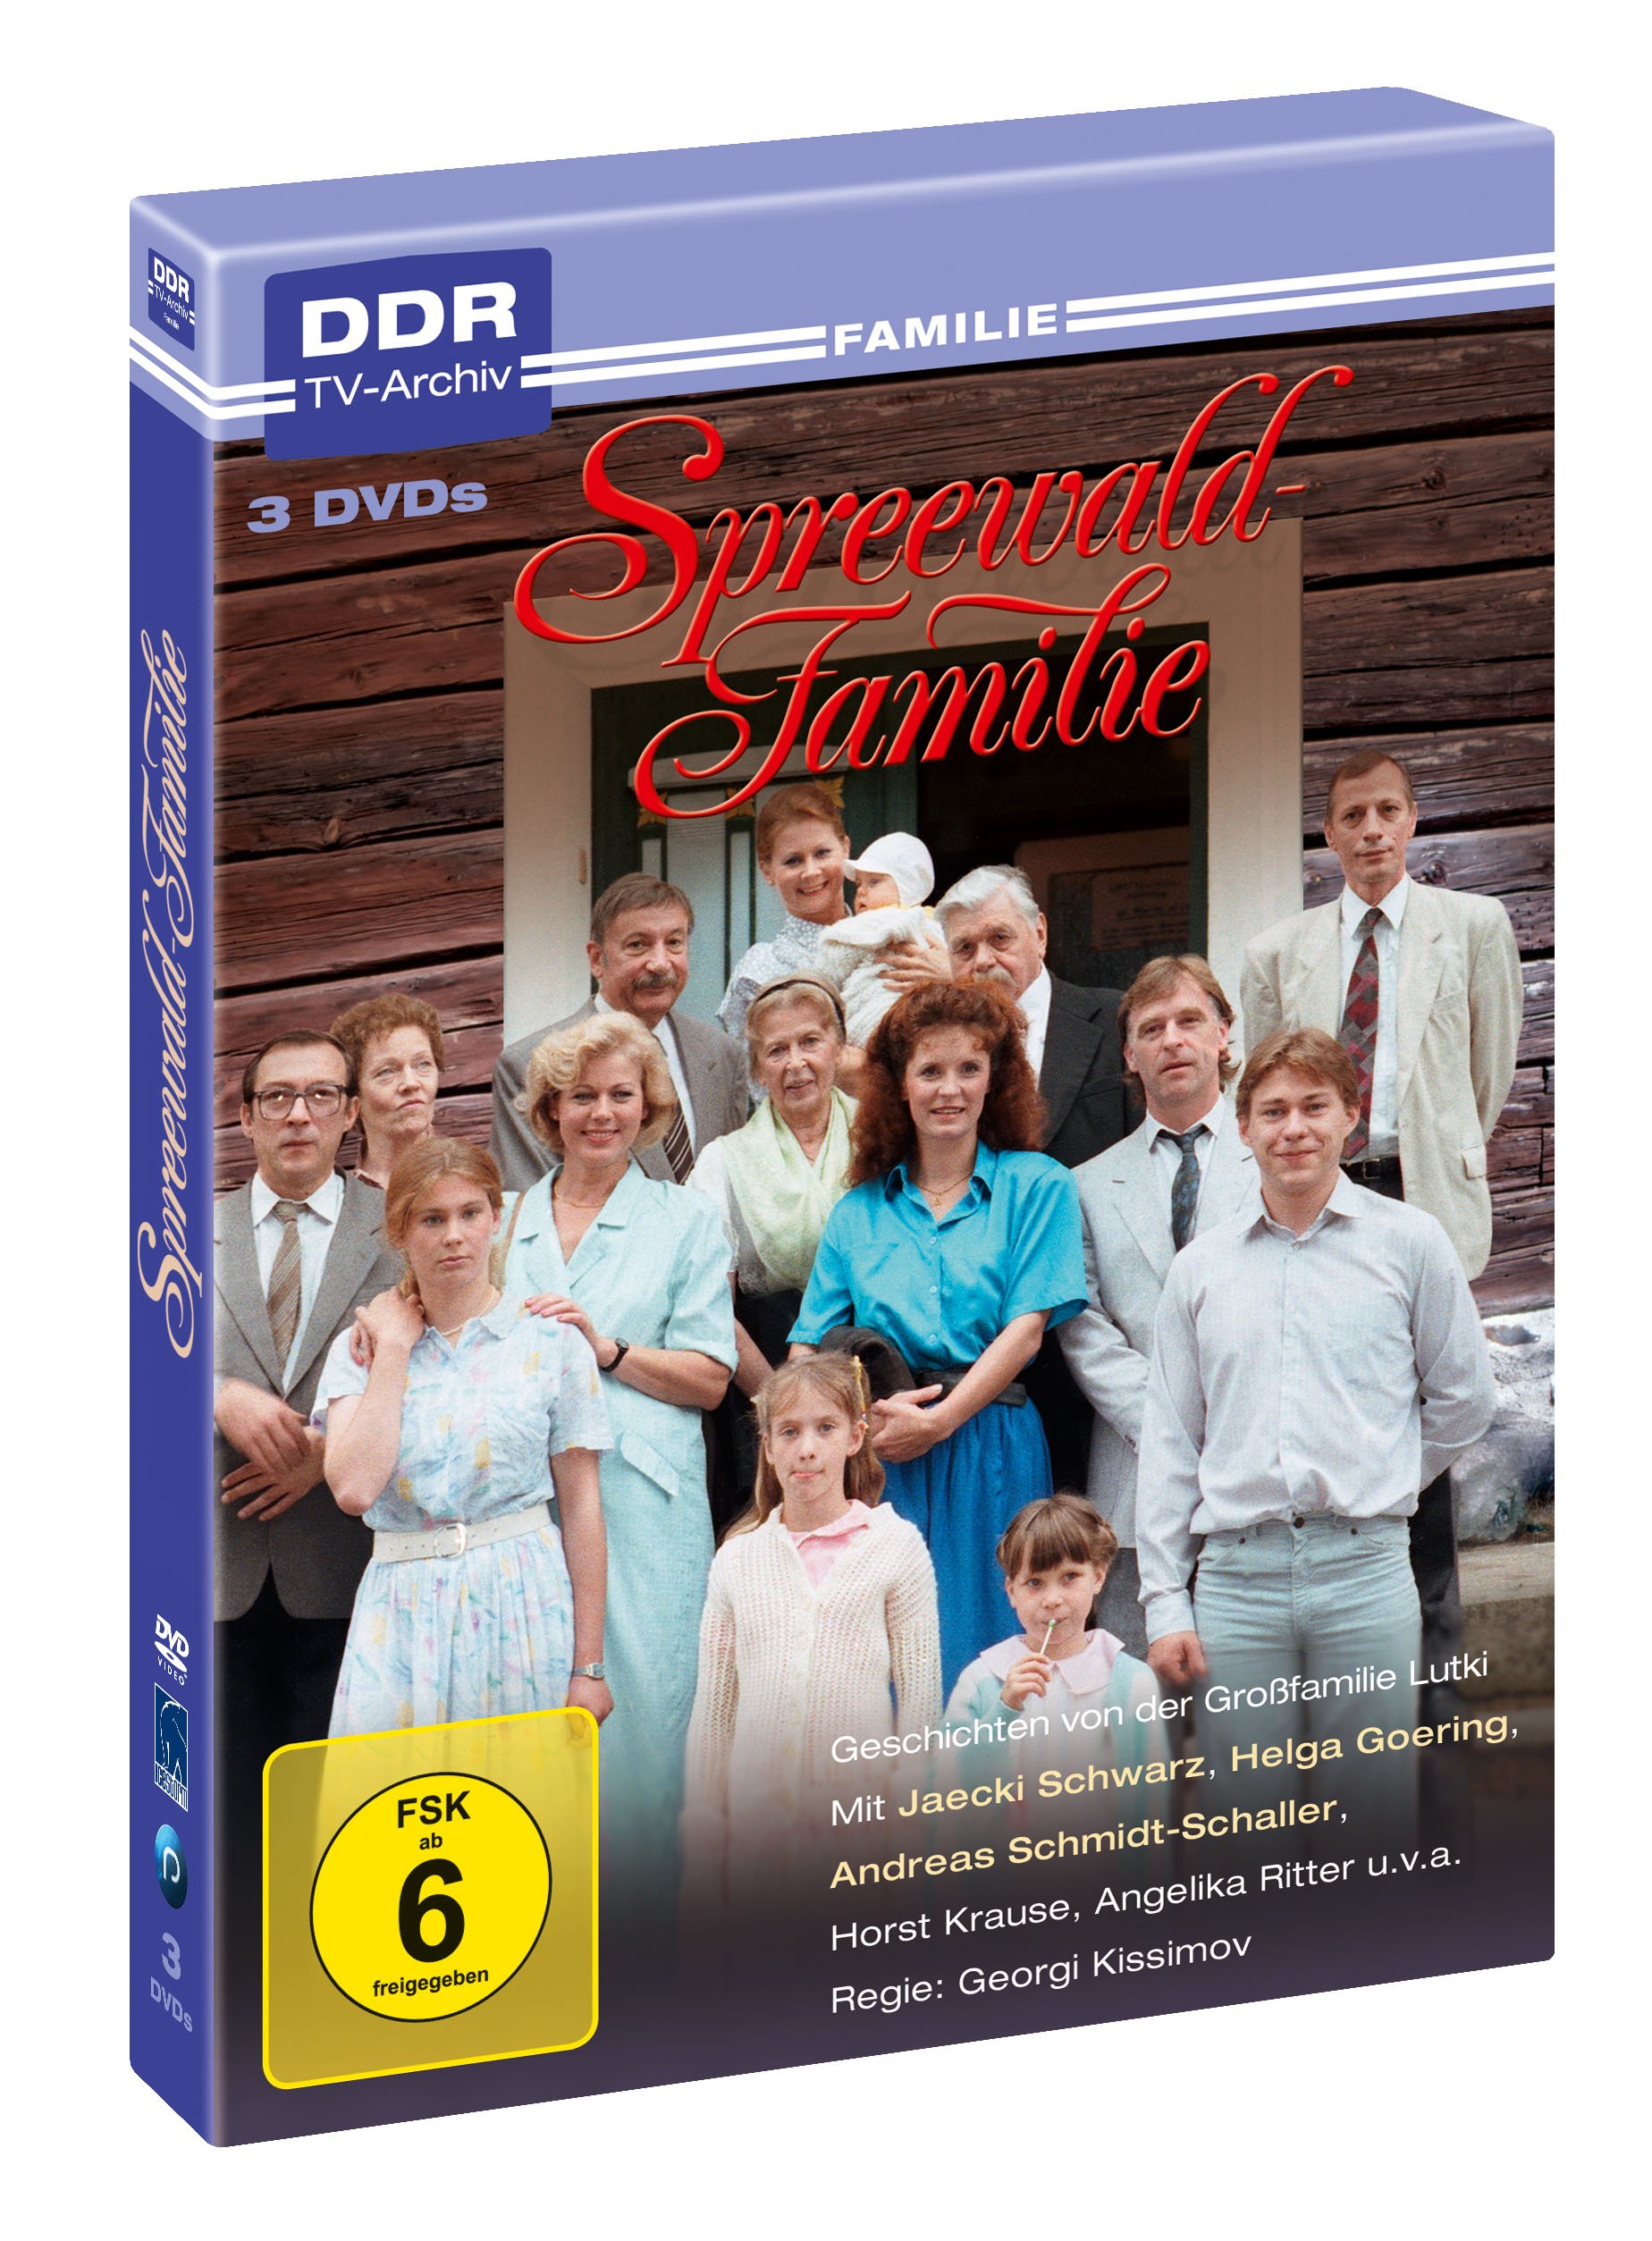 Spreewaldfamilie - DDR TV-Archiv ( 3 DVDs )